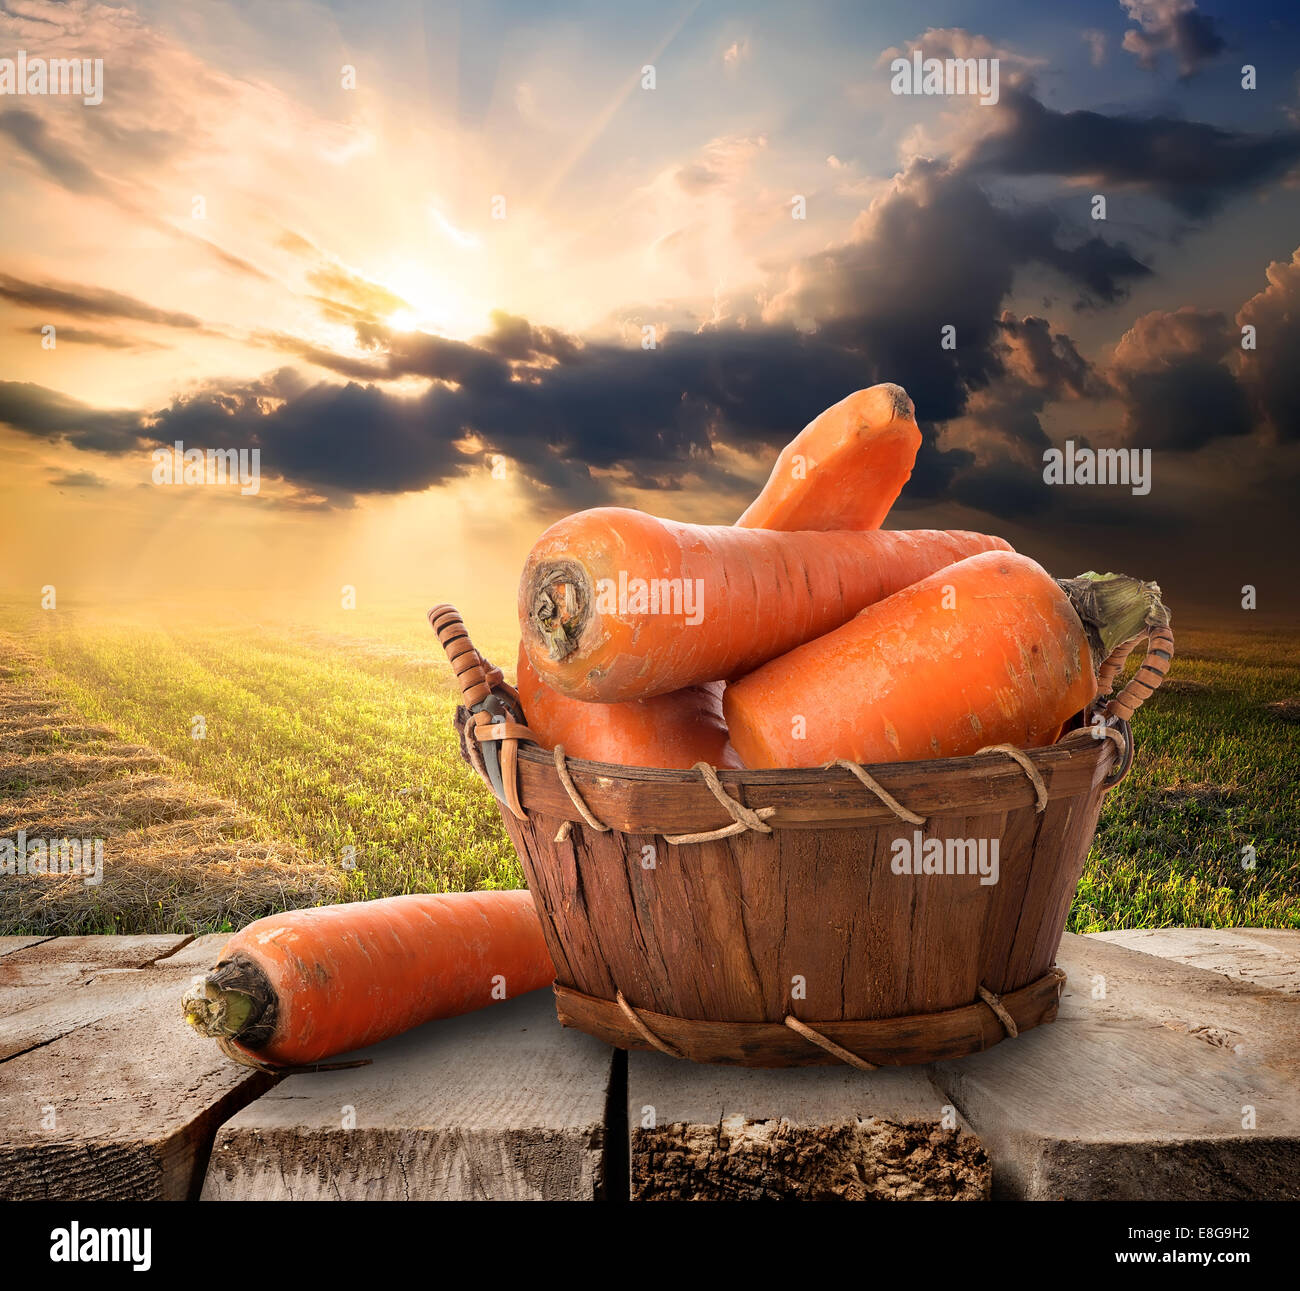 Les carottes dans un panier sur la table et du paysage Banque D'Images